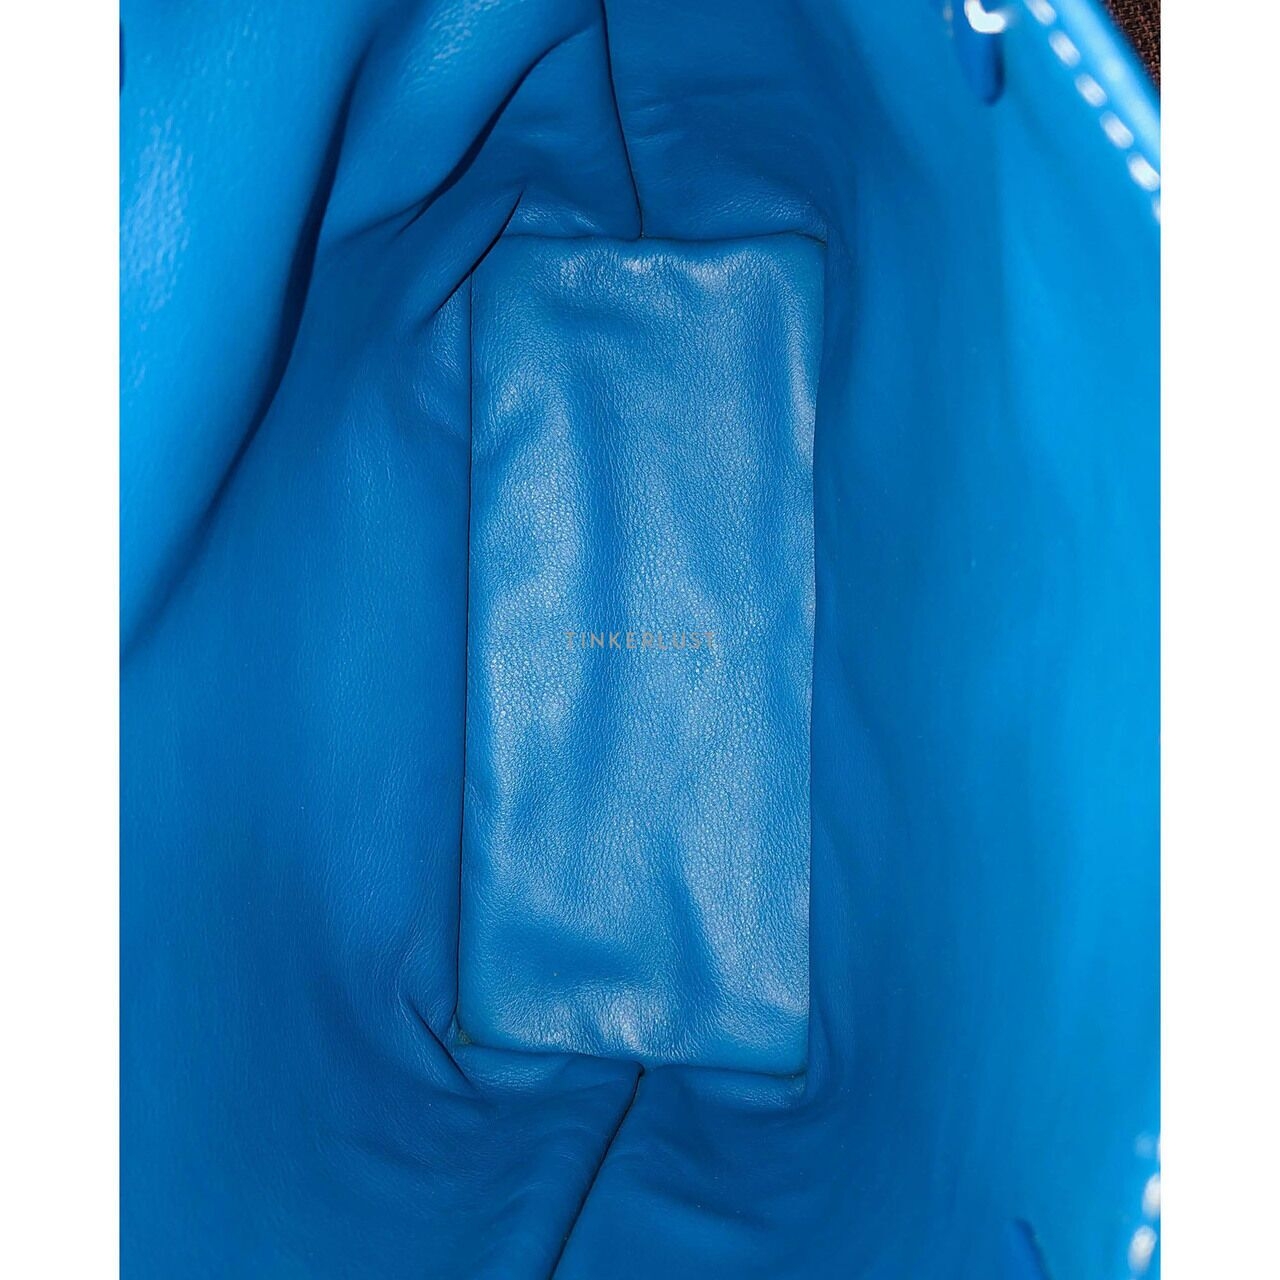 Goyard Mini Anjou Blue Ciel Handbag